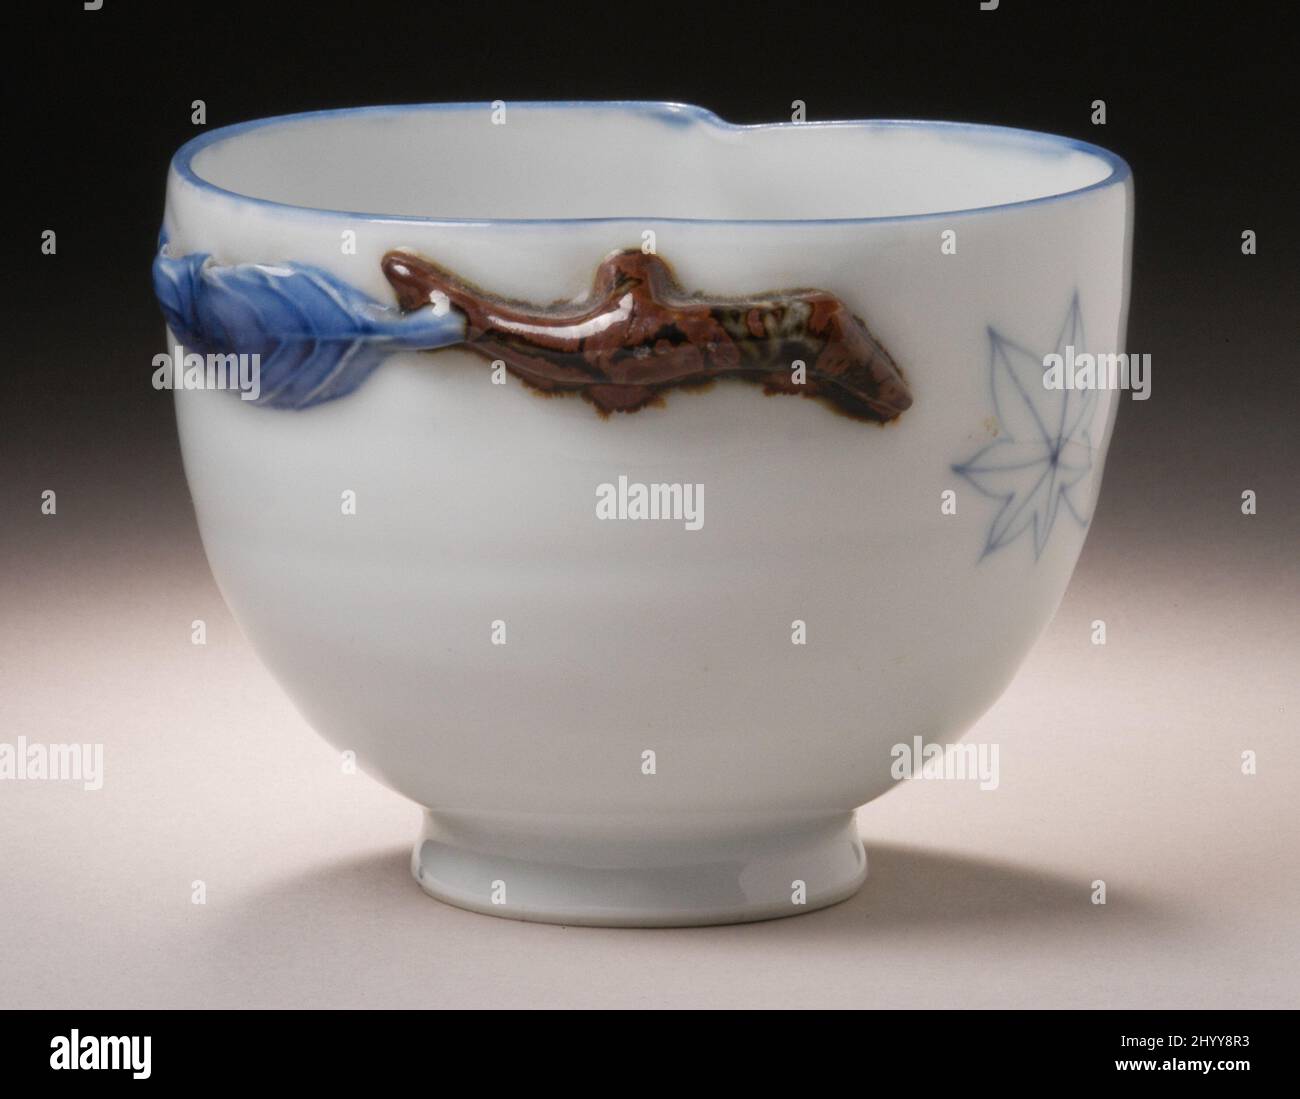 Bol en forme de pêche, décor feuille d'érable. Japon, 19th siècle. Céramique. Matériel Hirado Mikawachi, porcelaine avec glaçures blanches et brunes, bleu sous-glaçure Banque D'Images